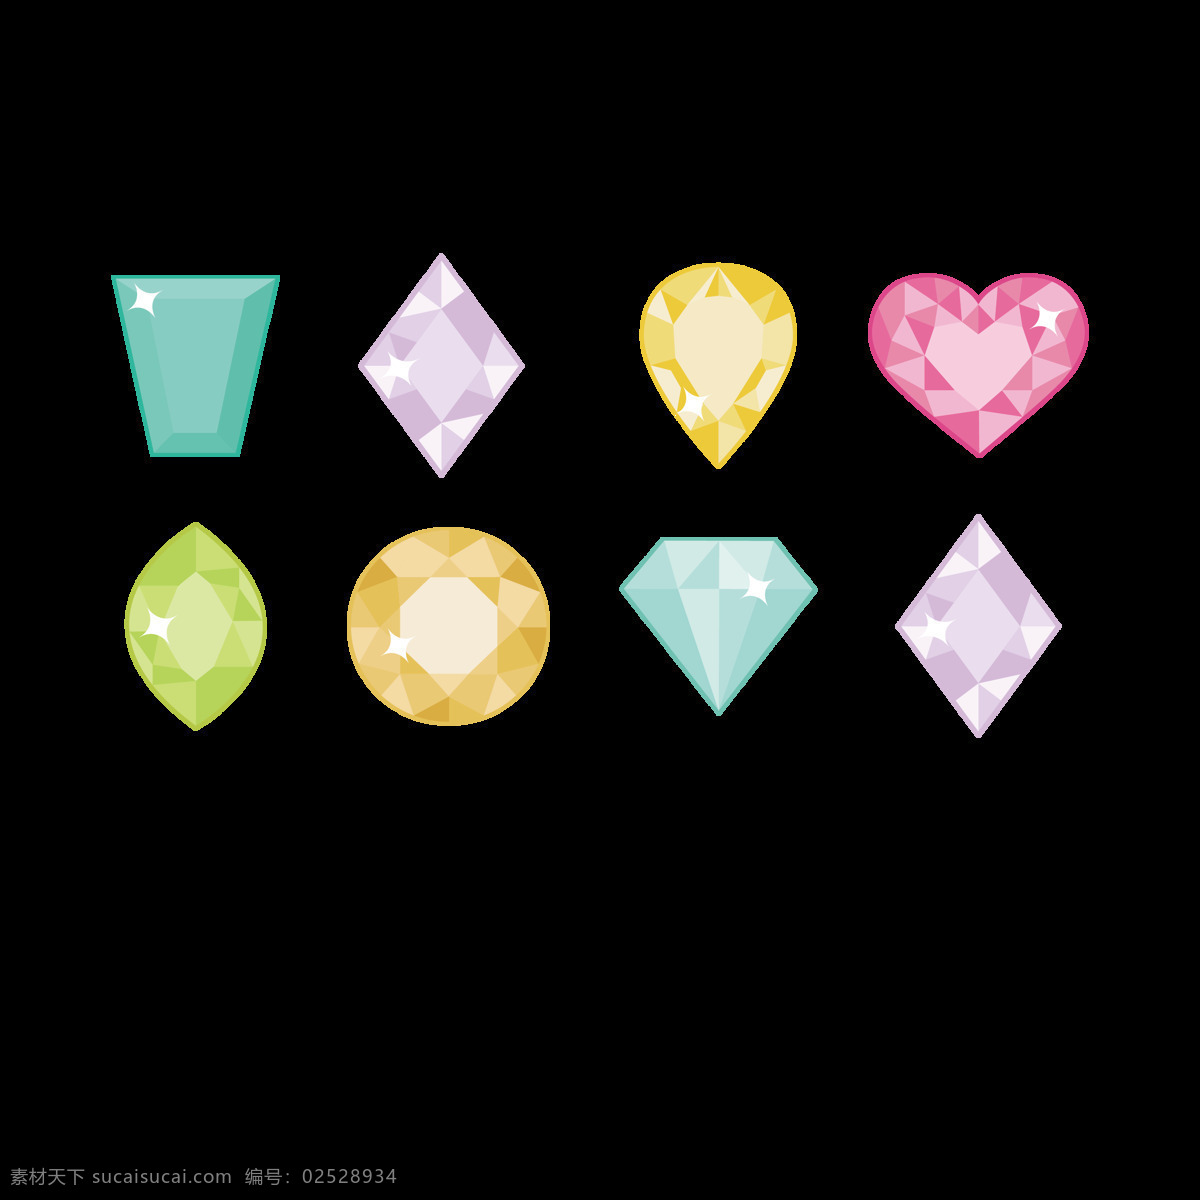 组 彩色 钻石 元素 珠宝 可爱 切割 图形 装饰 水滴钻石 心形钻石 卡通